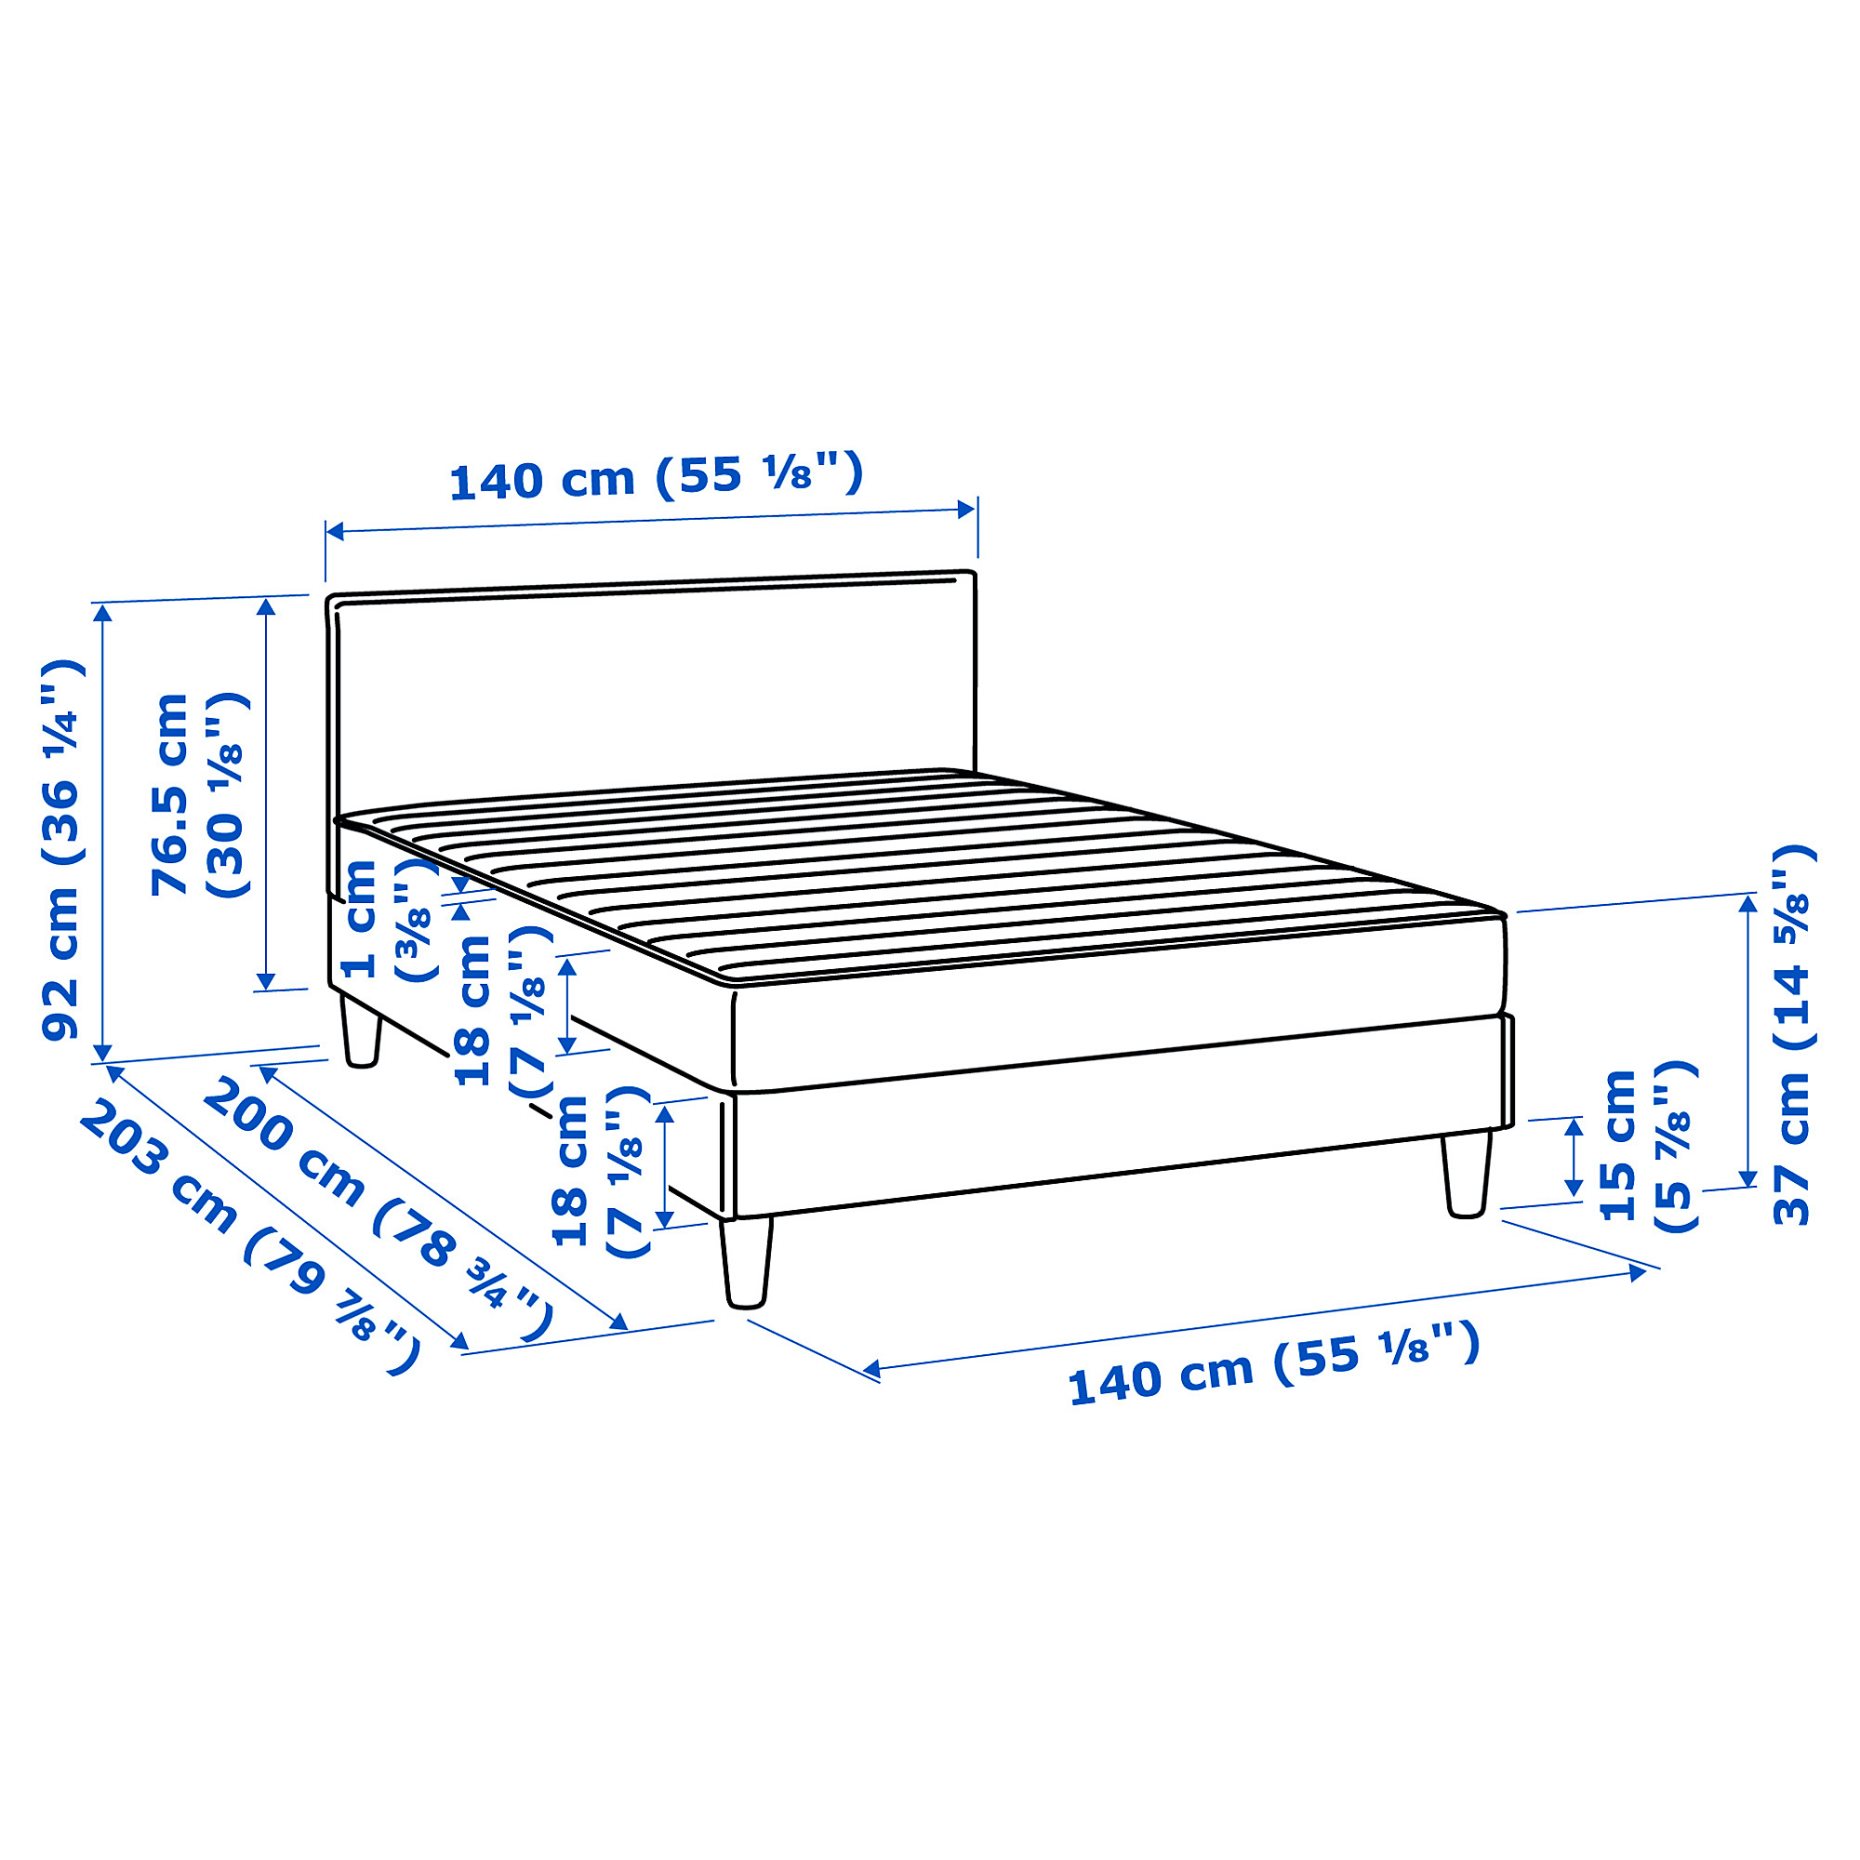 SÄBÖVIK, divan bed with mattress, 140x200 cm, 693.857.50